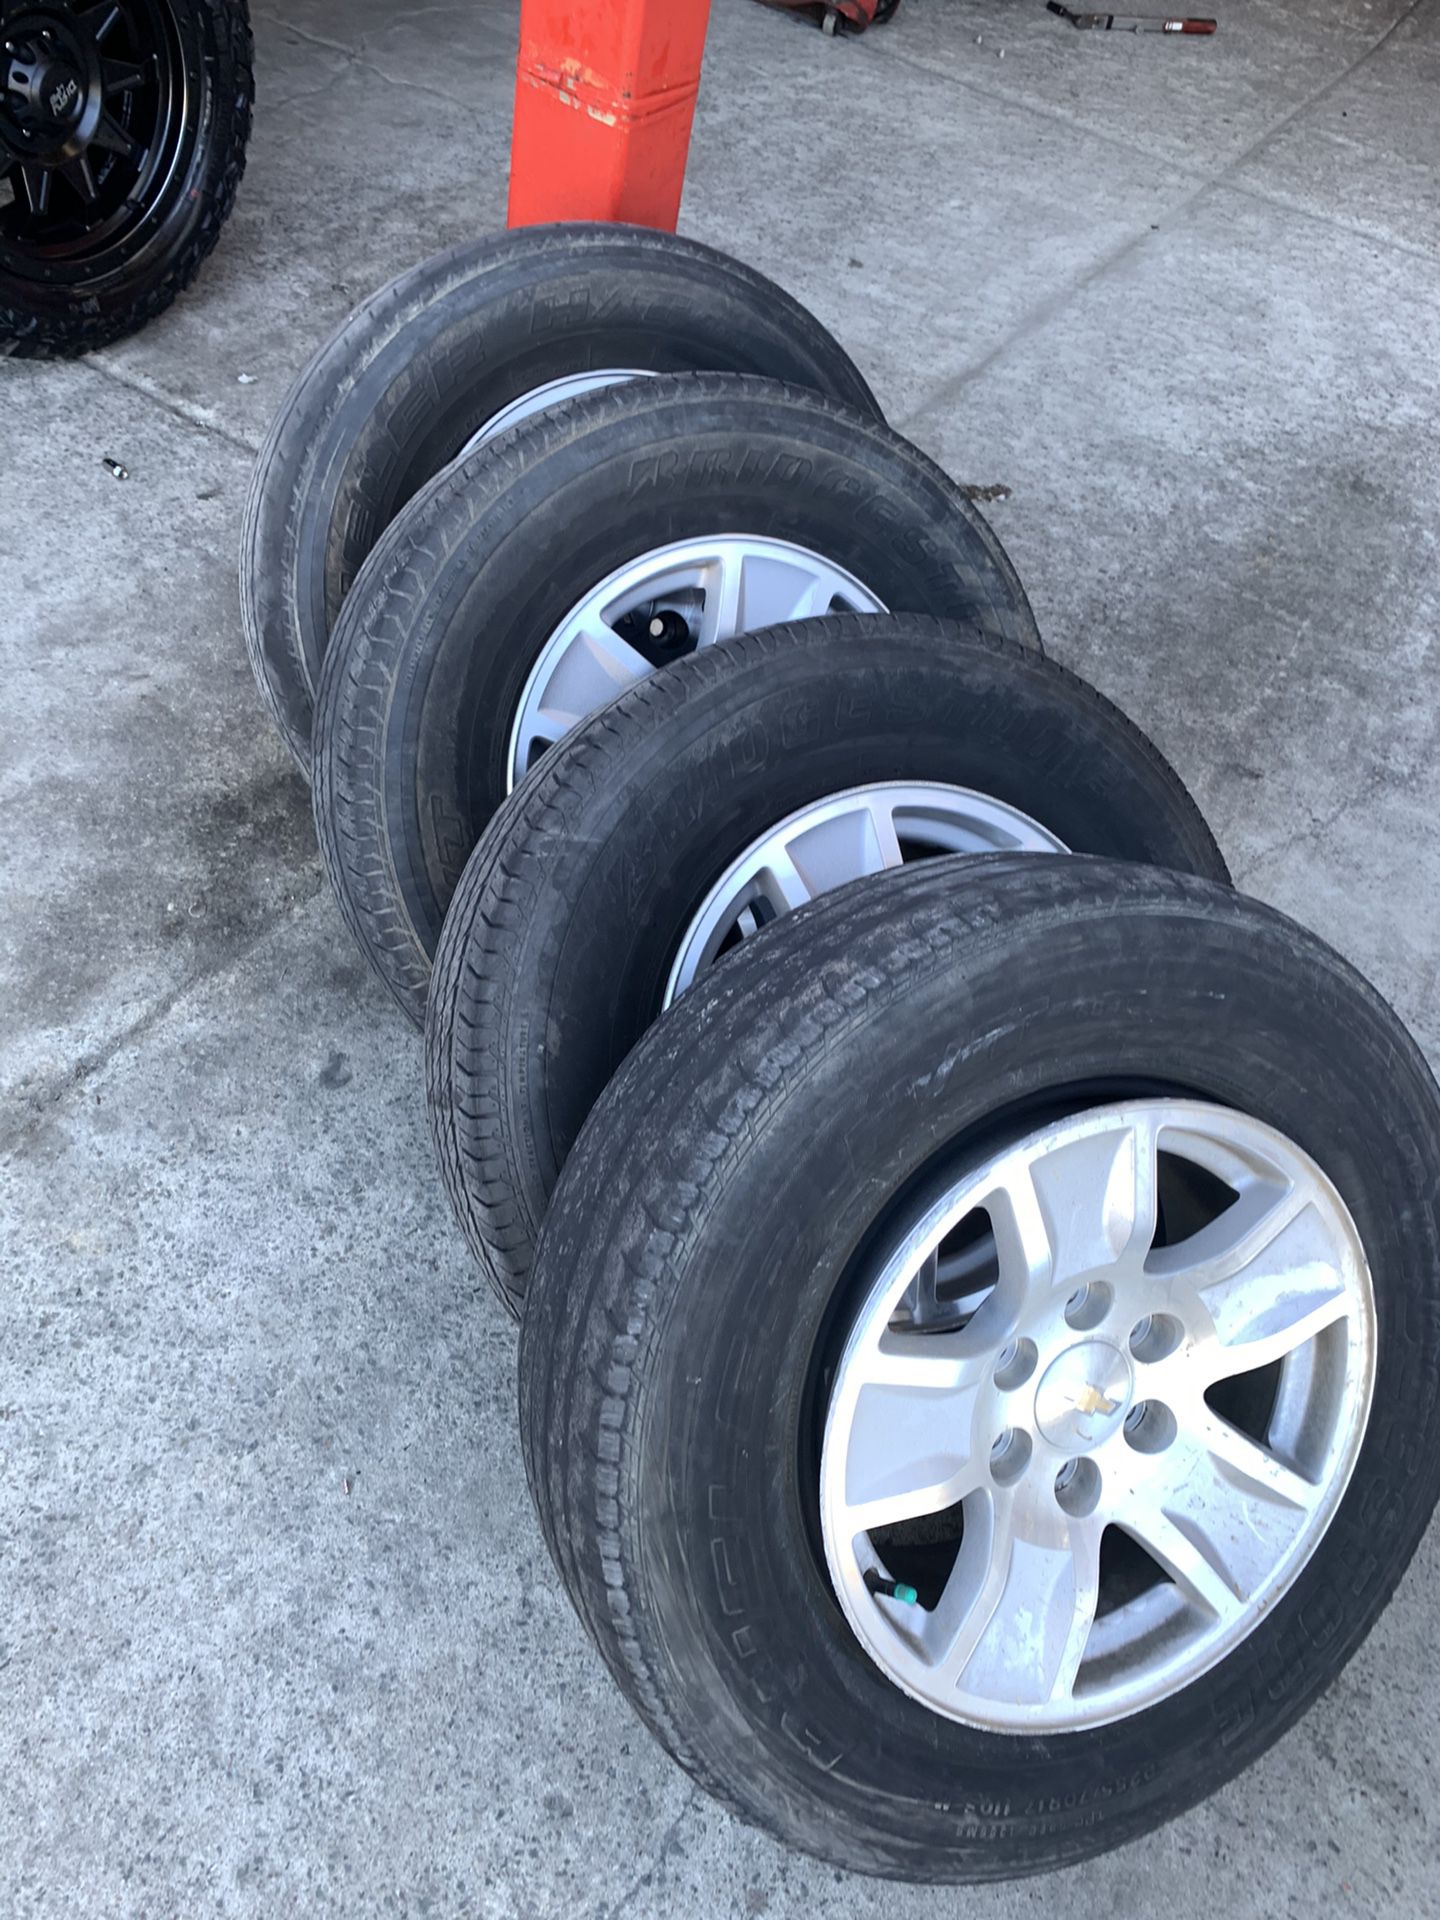 2018 Silverado wheels and tires